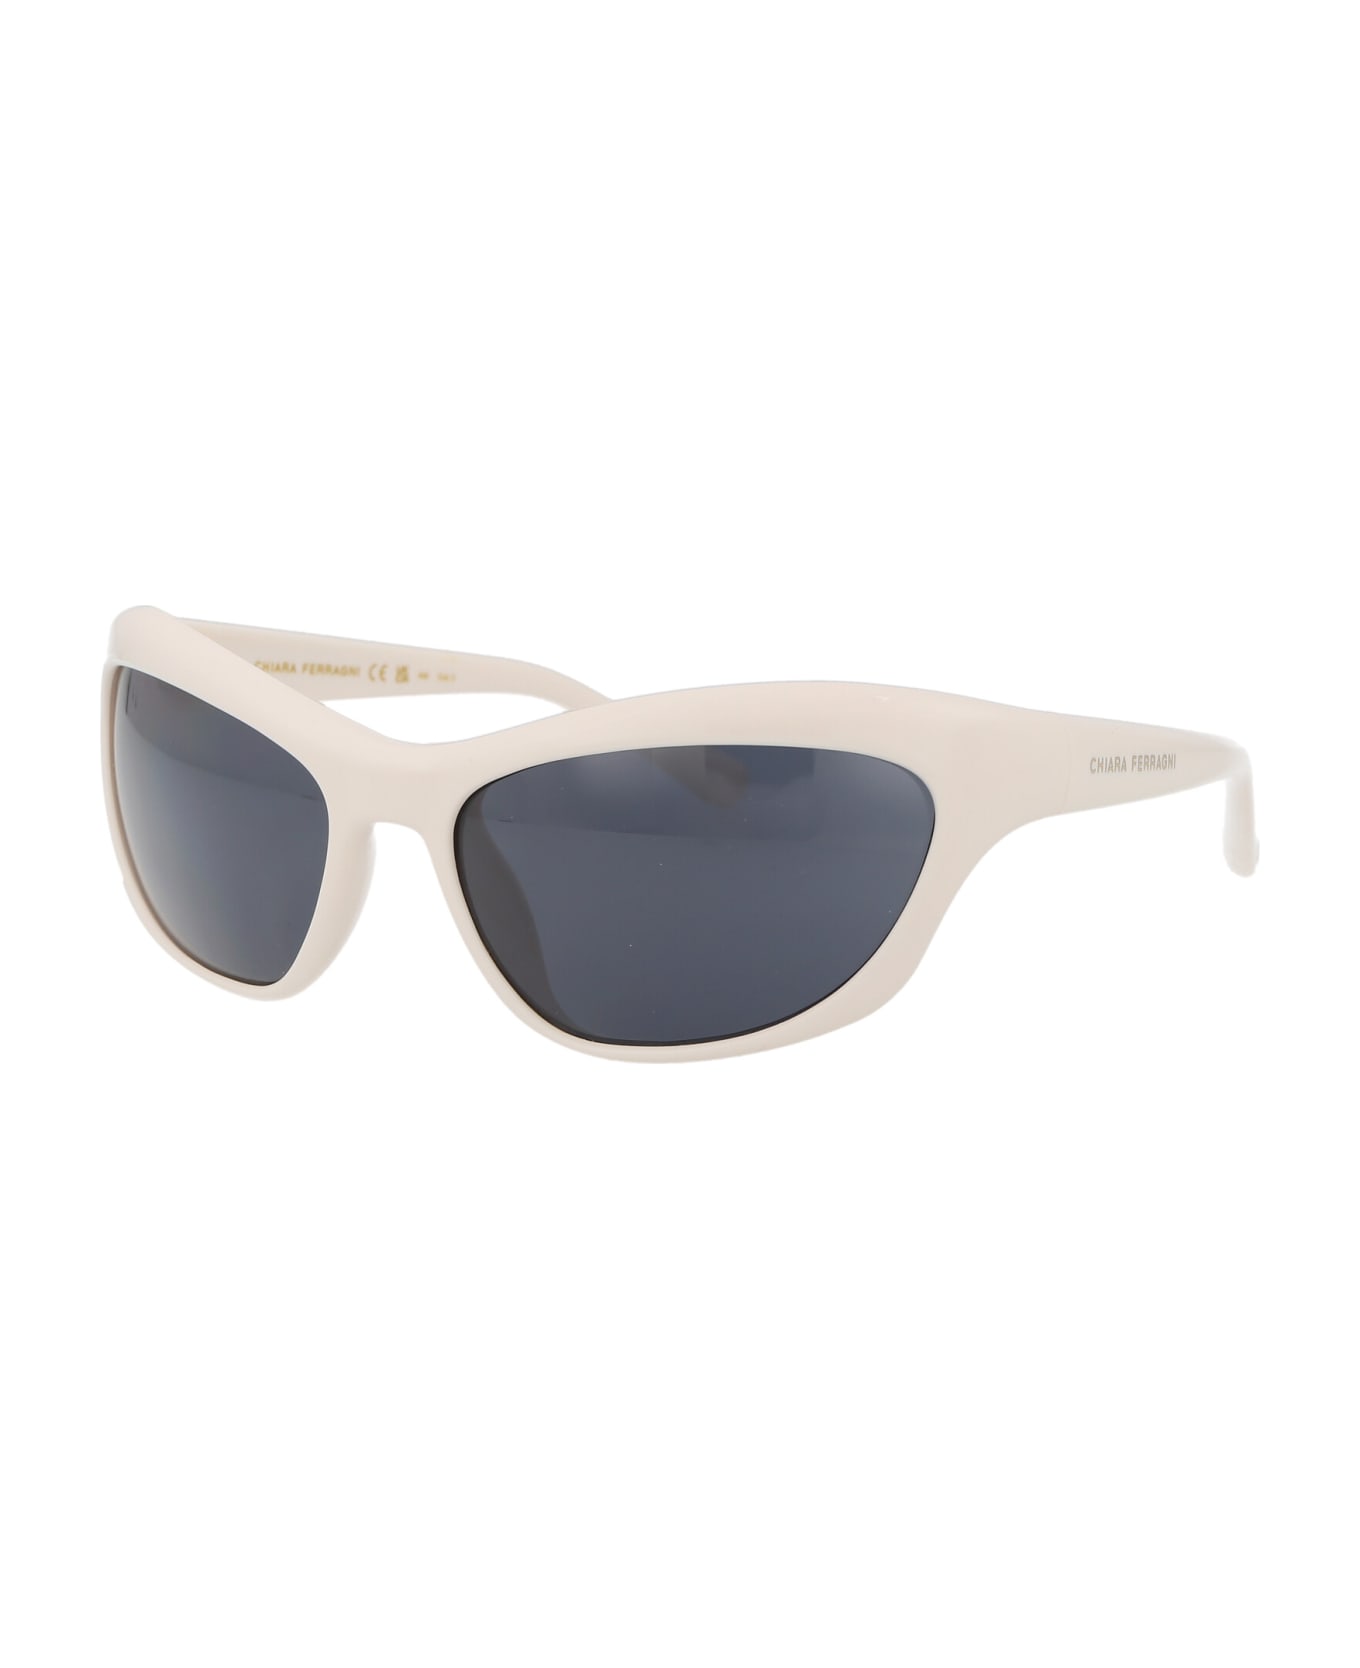 Chiara Ferragni Cf 7030/s Sunglasses - VK6IR WHITE